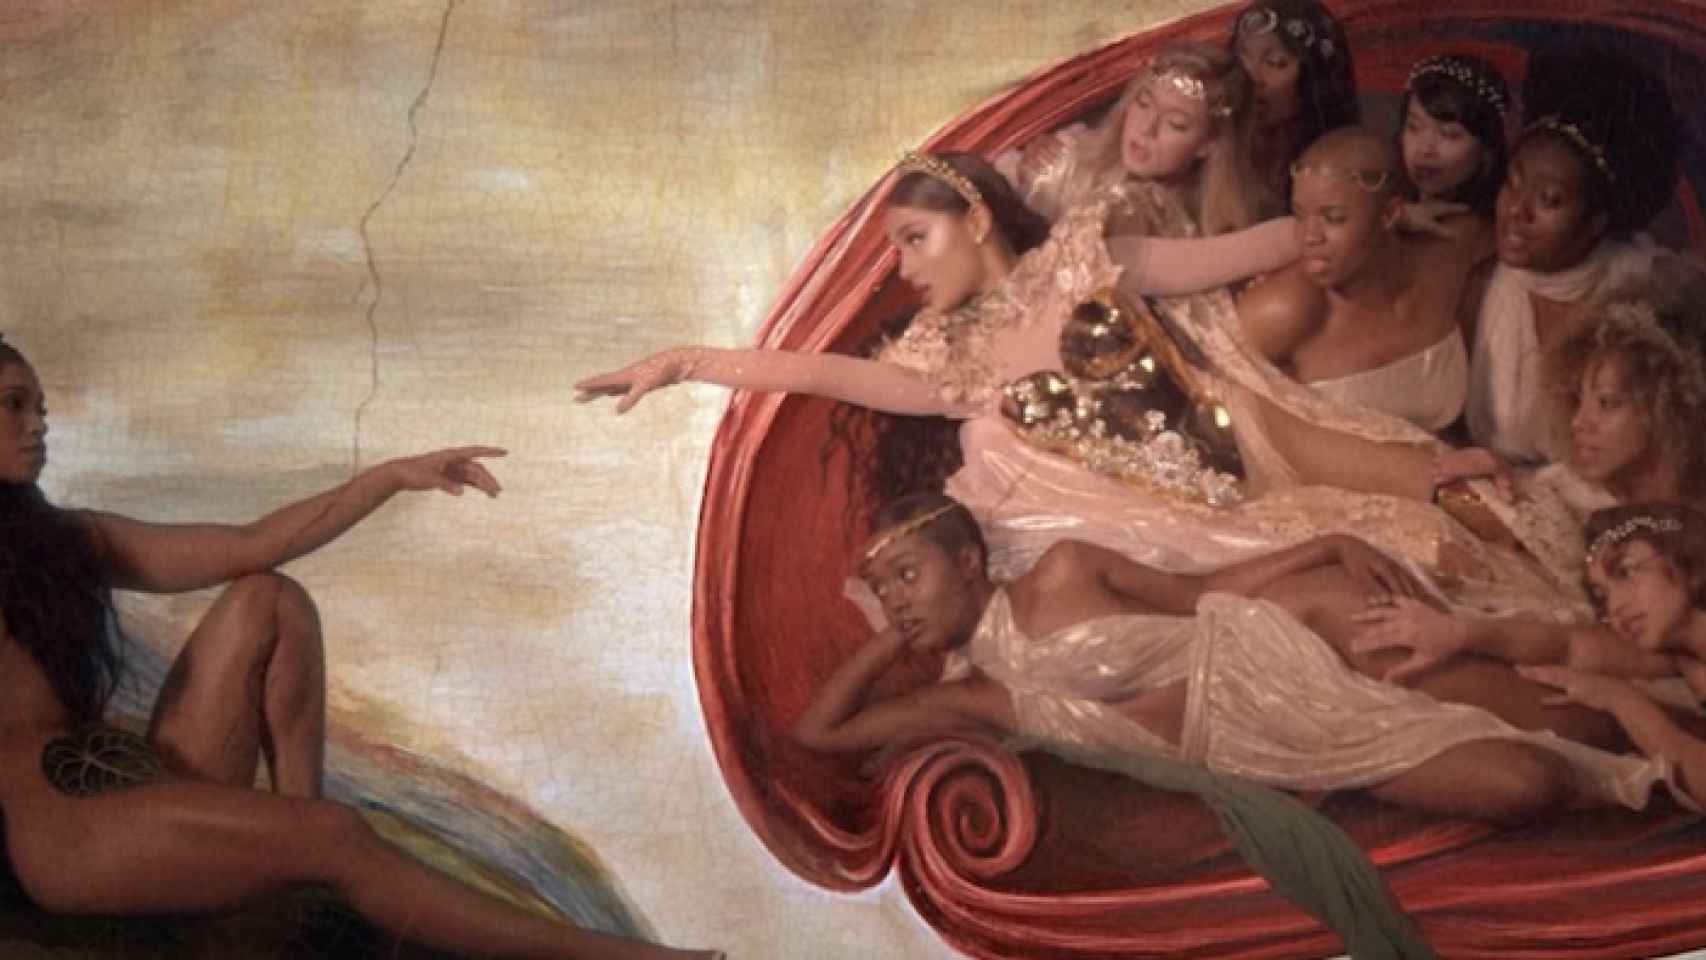 Fotograma del videoclip de Ariana Grande, God is a woman, donde emula La creación de Adán de Miguel Ángel.